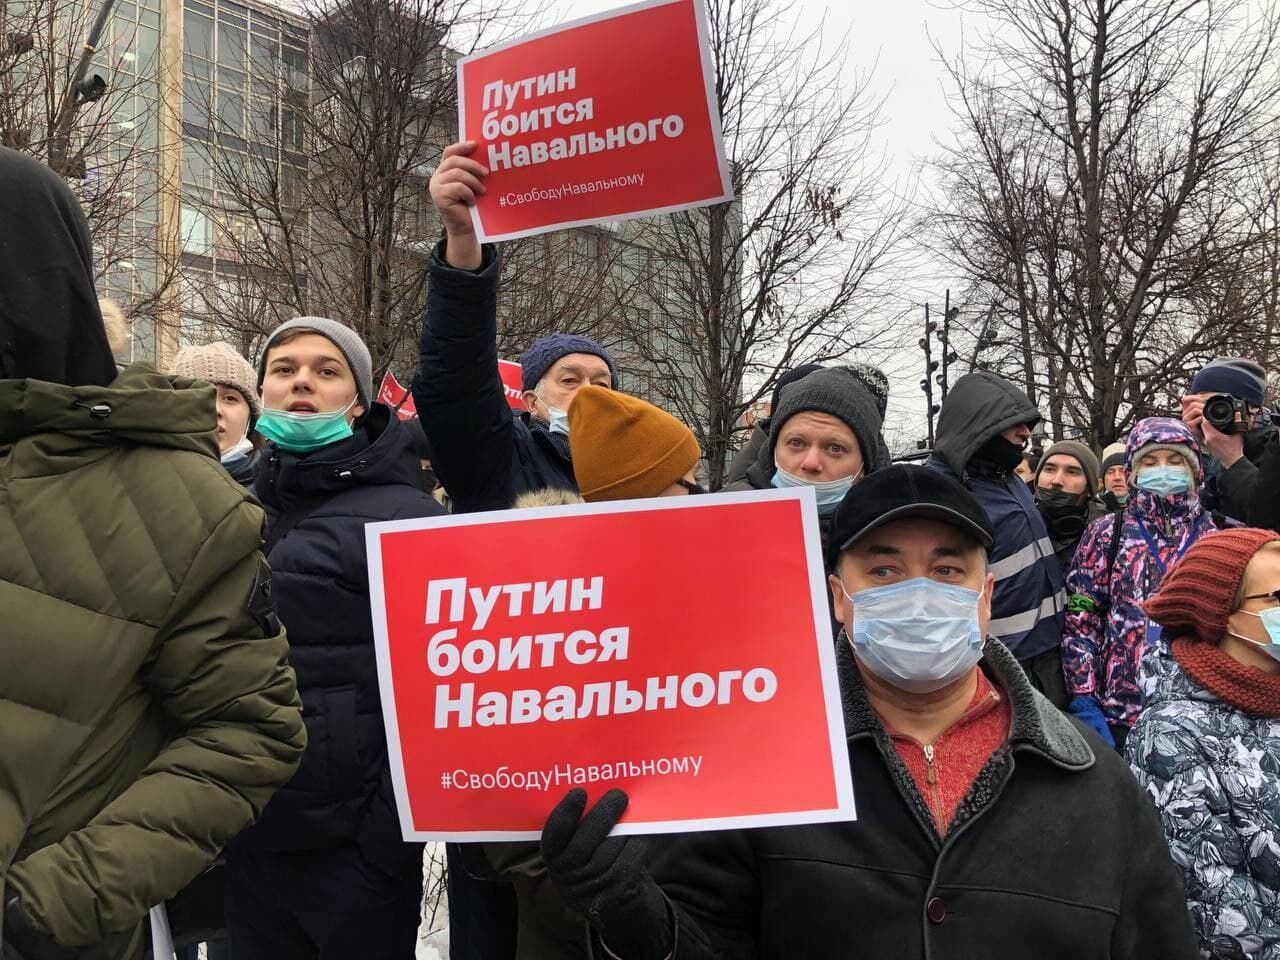 طرفداران منتقد دولت روسیه تظاهرات کردند